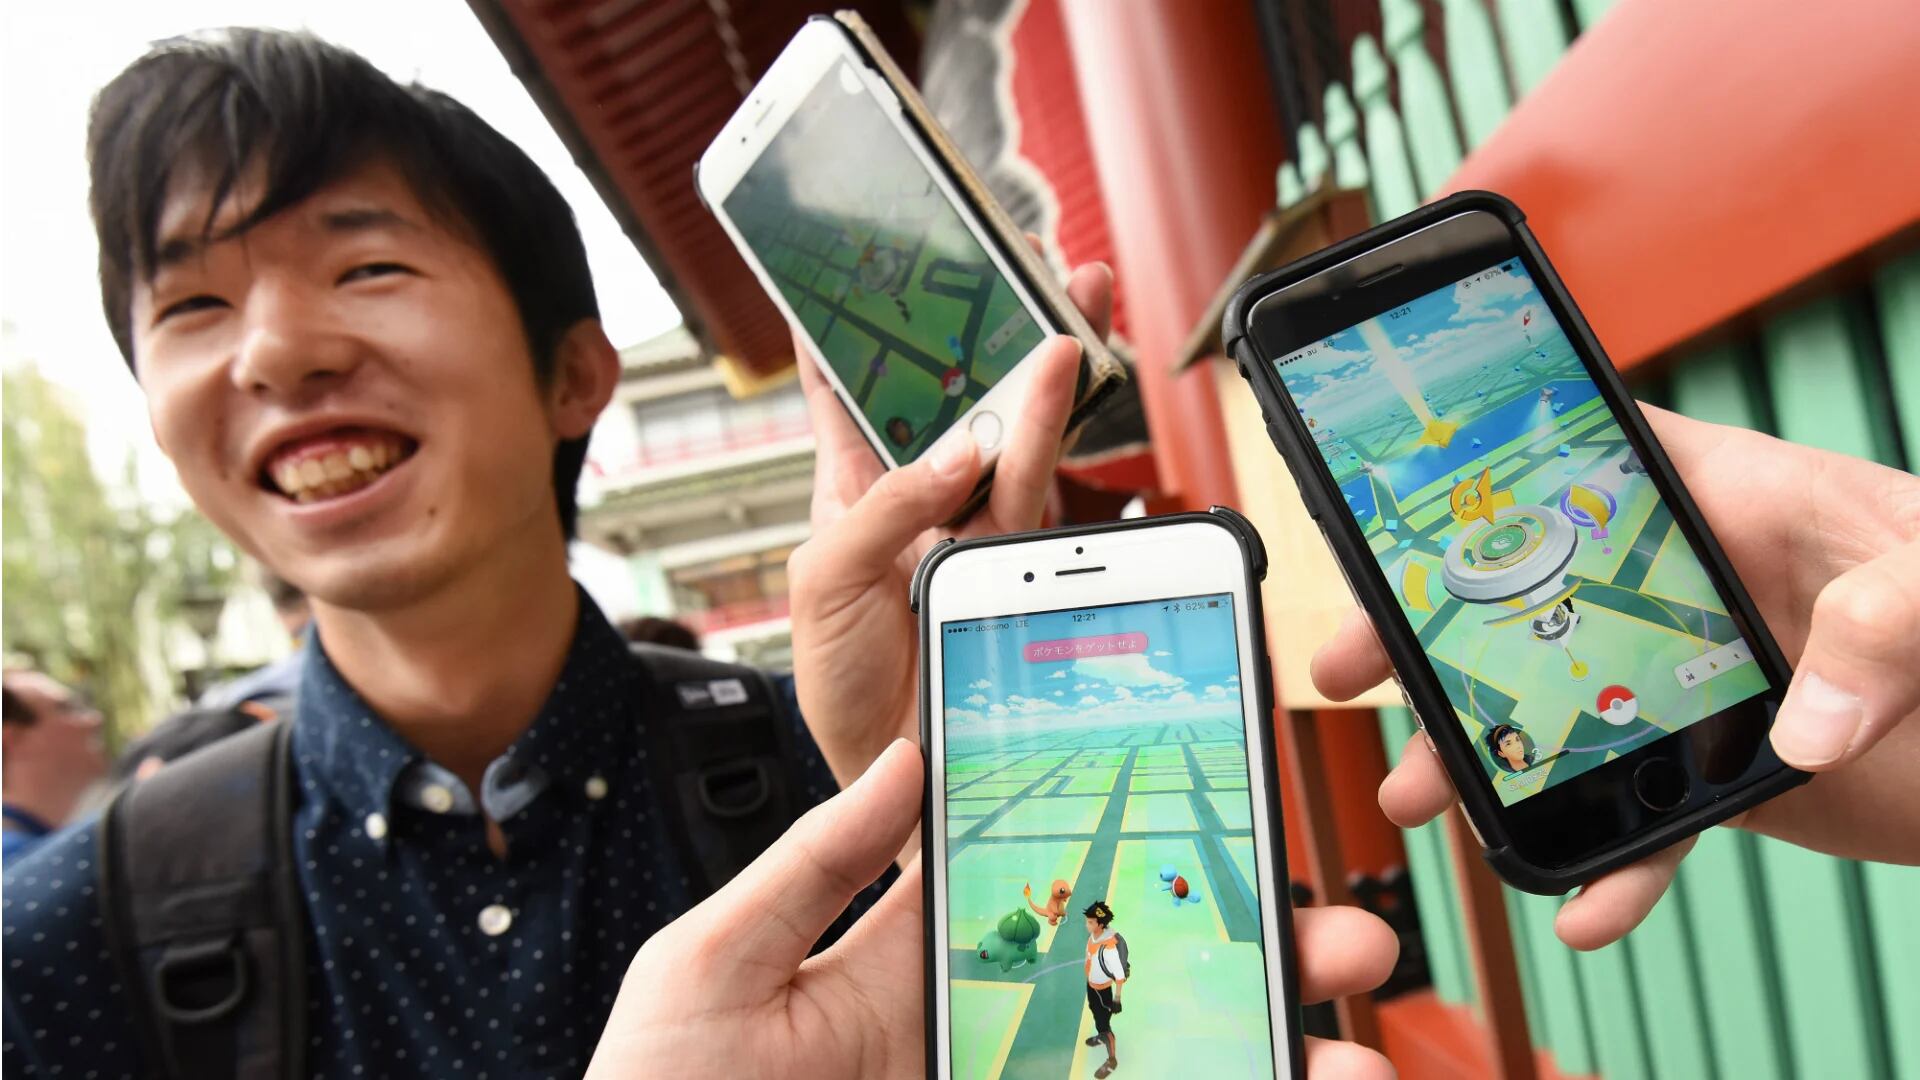 El juego móvil Pokémon Go llegó a Japón, país donde nació la famosa serie animada (AFP)